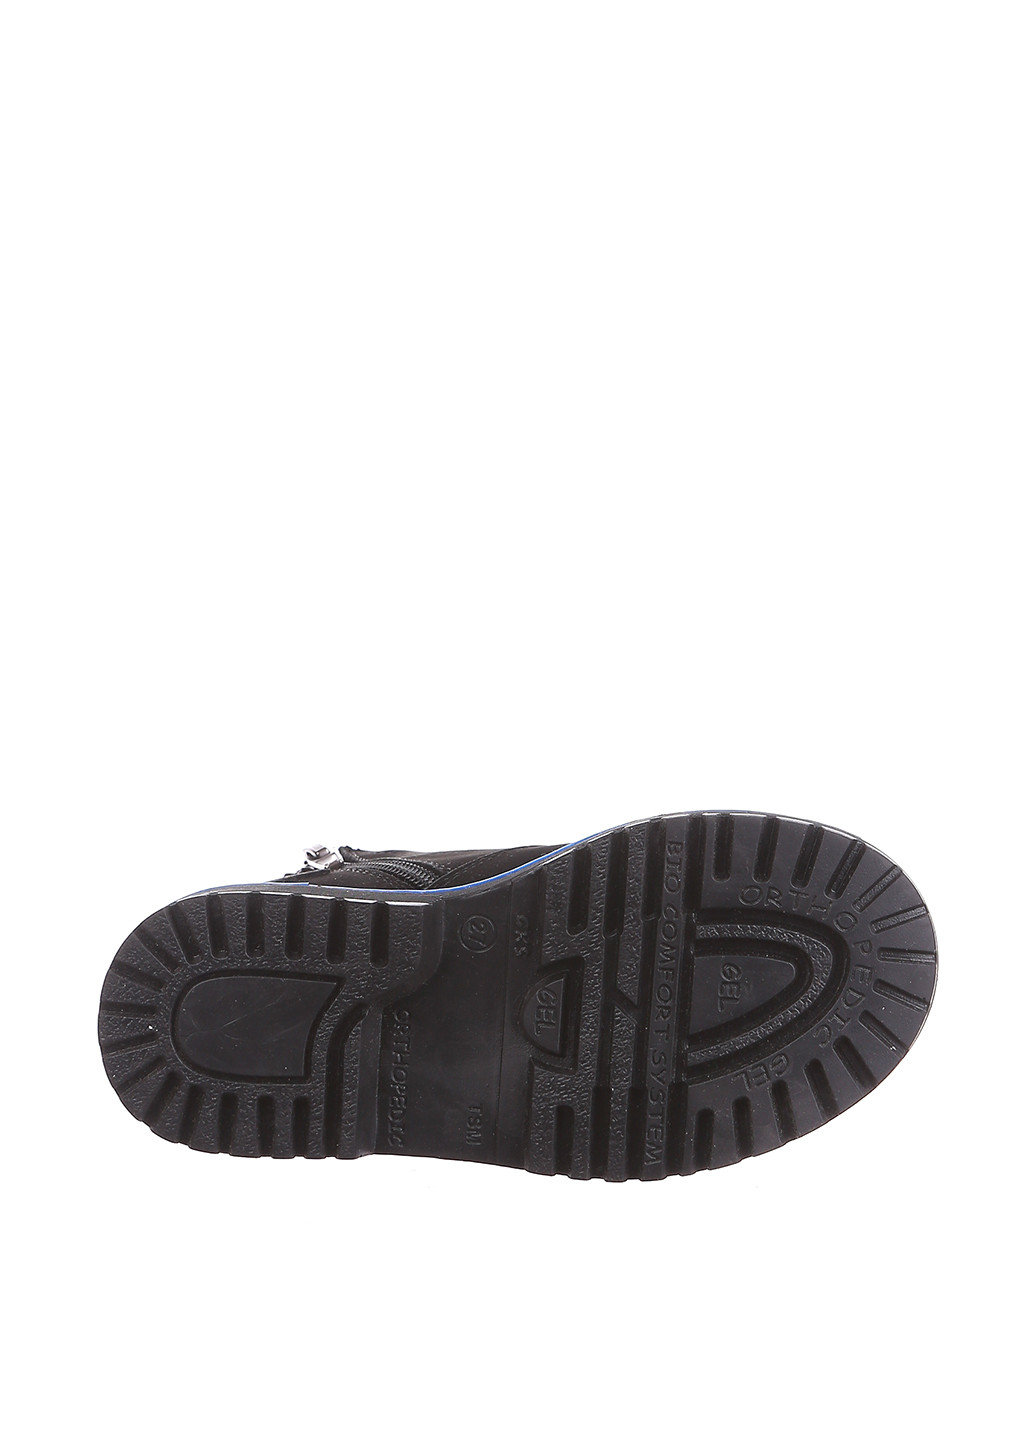 Черные кэжуал осенние ботинки Broni